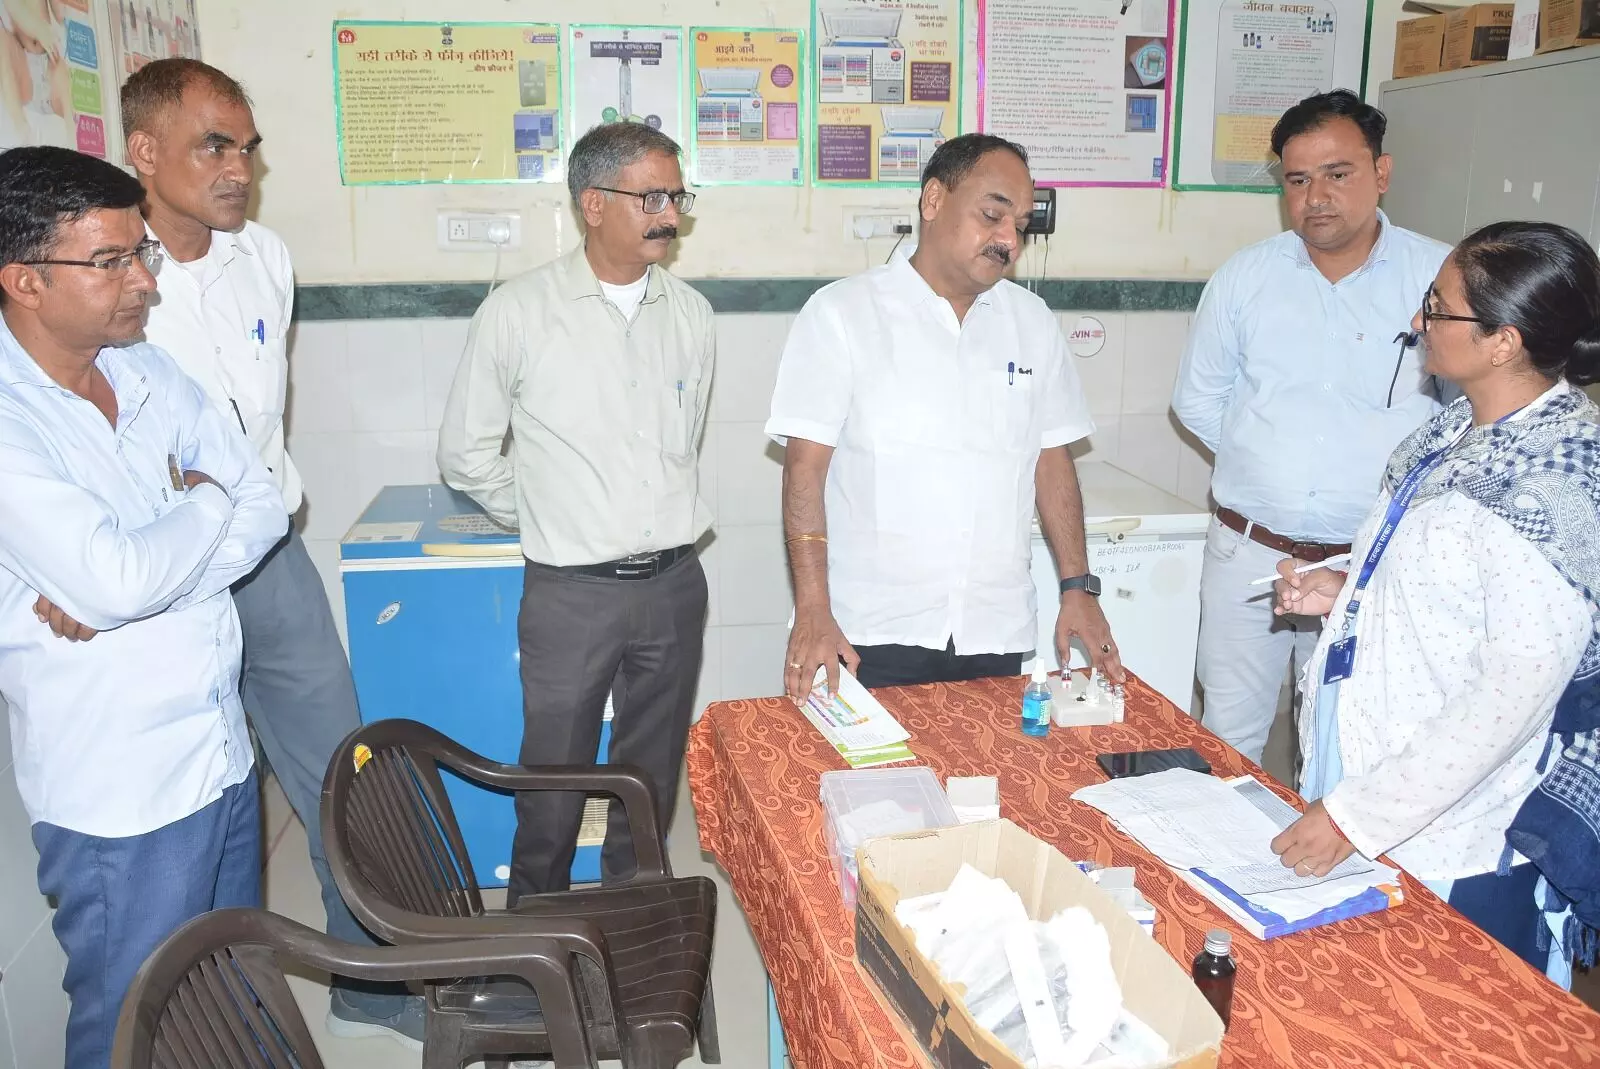 Churu : राज्य नोडल अधिकारी डॉ. अजय चौधरी ने चिकित्सा संस्थान का किया निरीक्षण